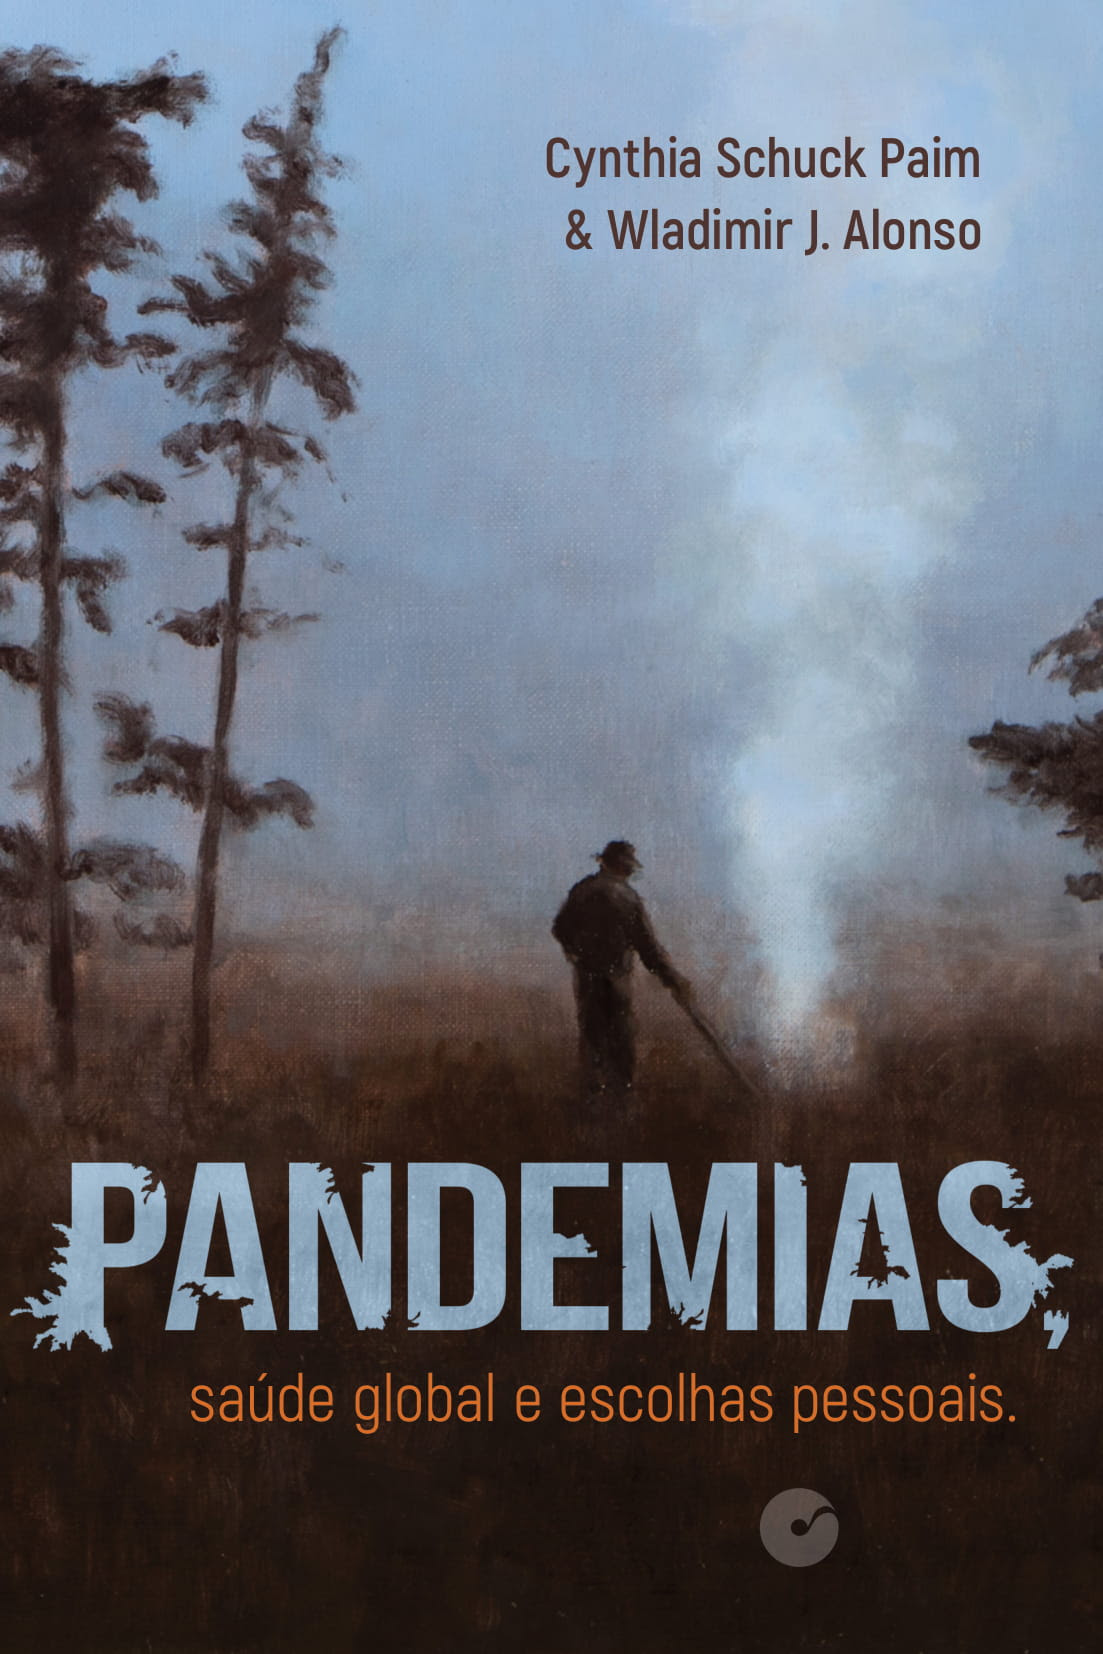 Livro: Pandemias, saúde global e escolhas pessoais